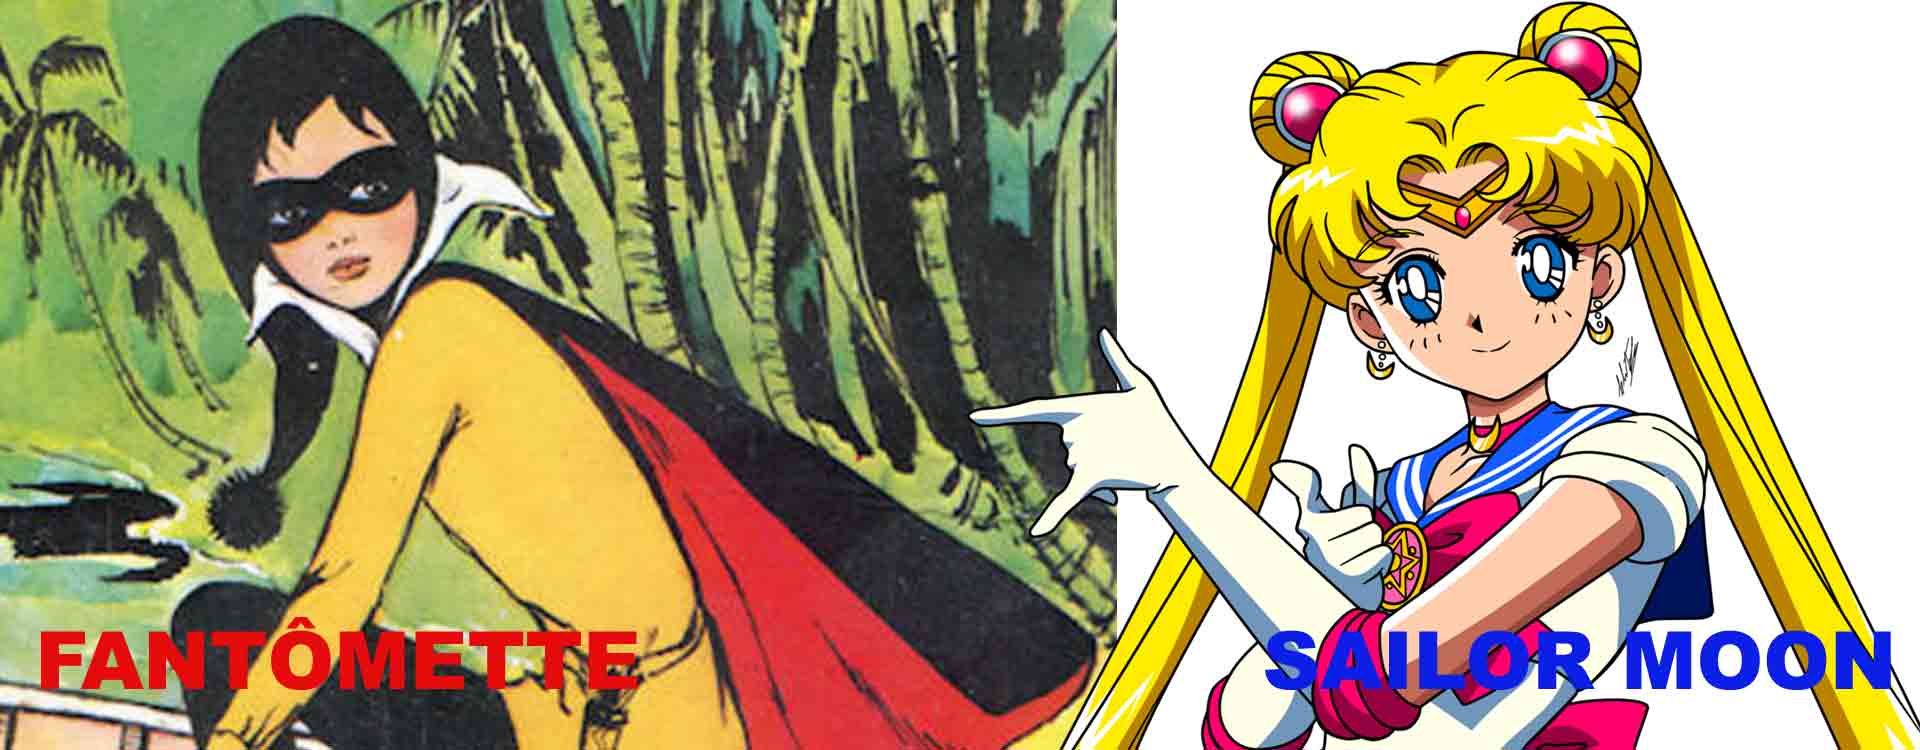 Fantomette et Sailor Moon ont influencé le créateur de Miraculous Ladybug